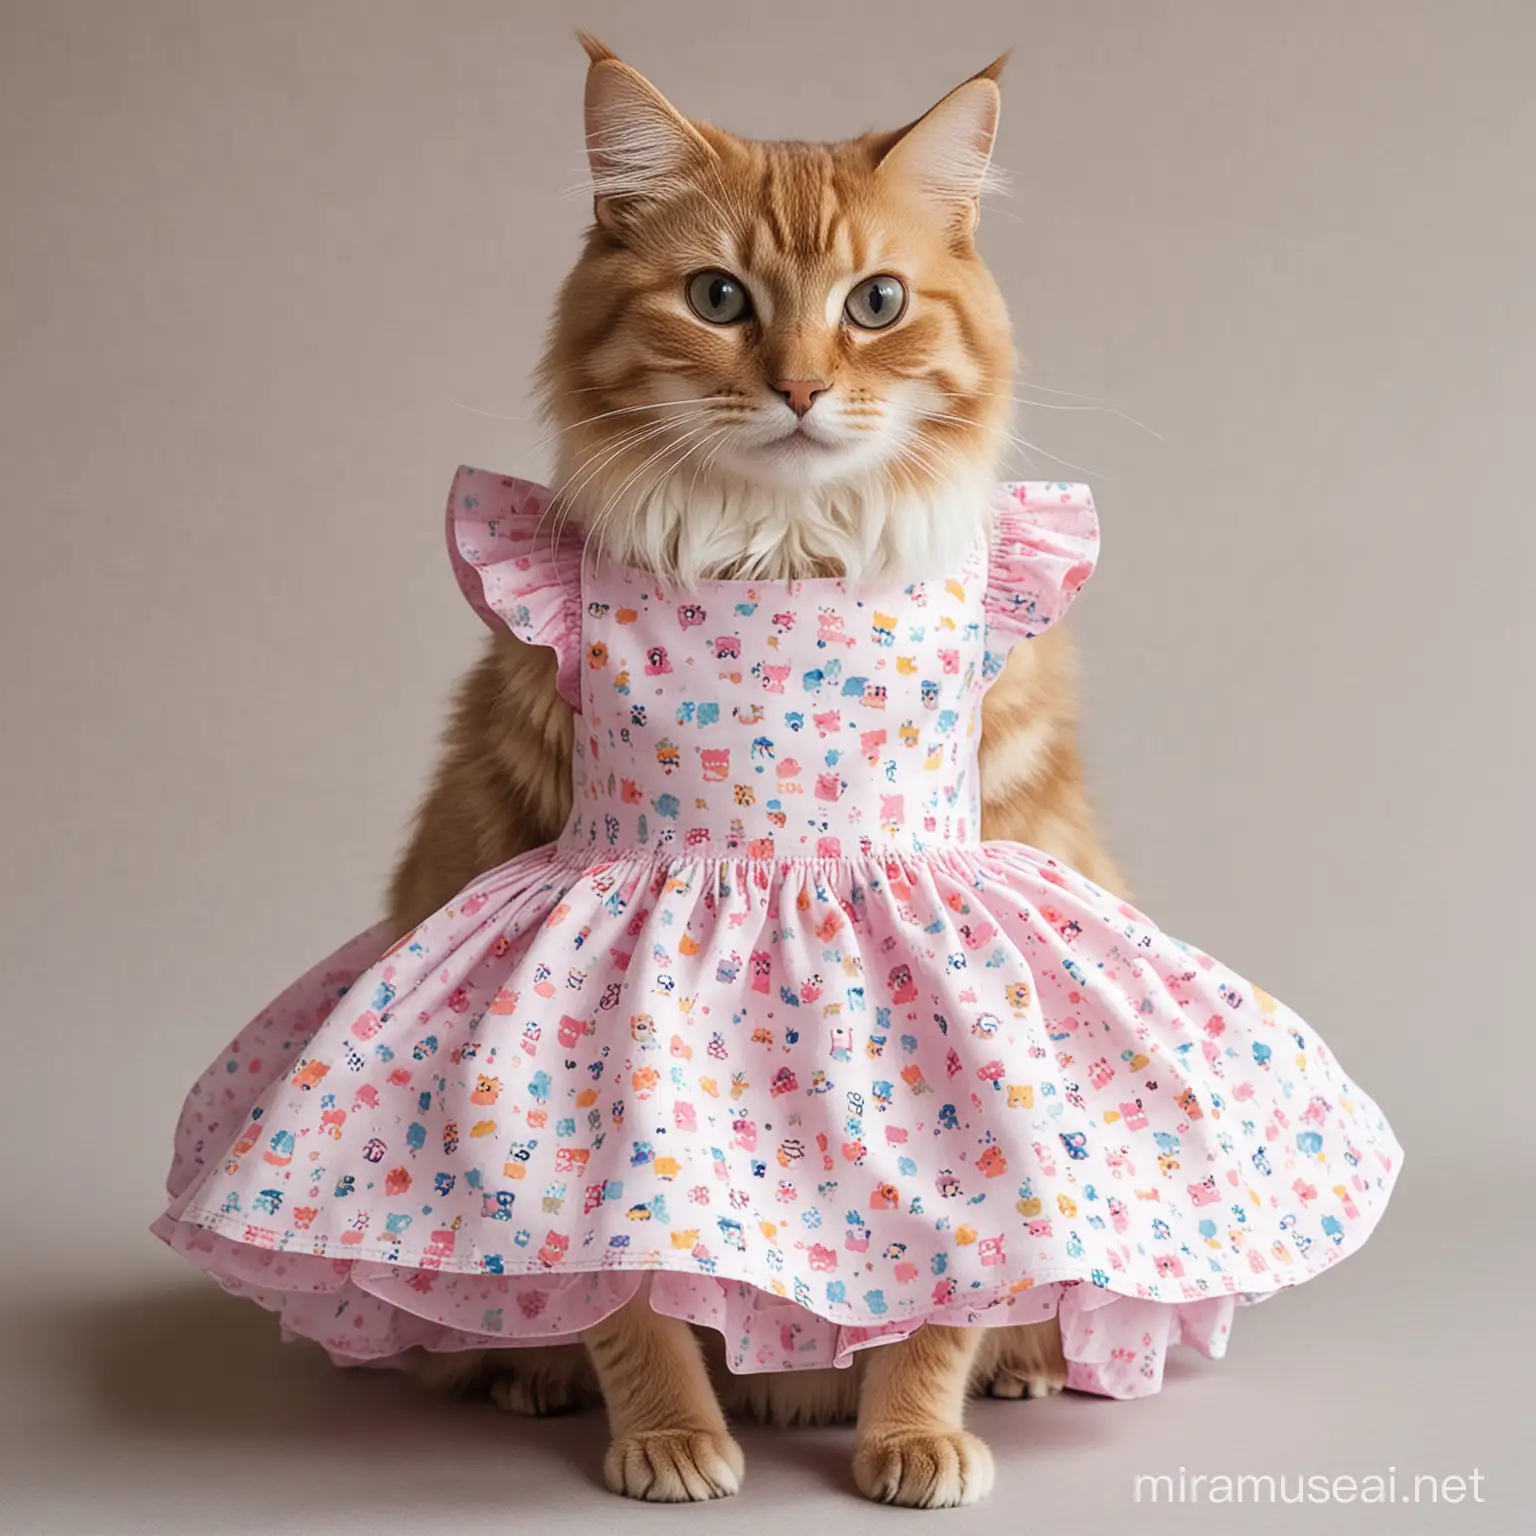 Elegant Cat Wearing a Flowing Dress